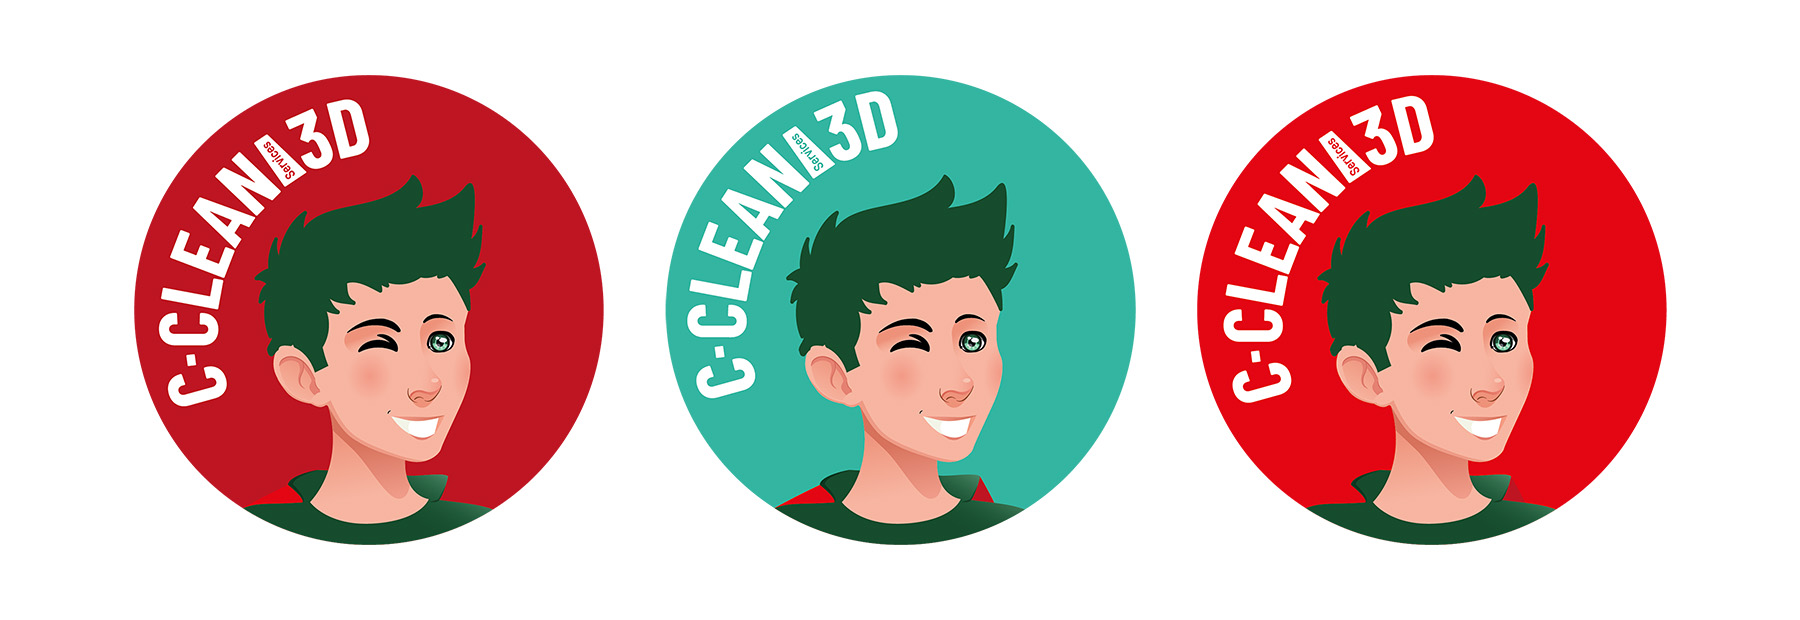 C-Clean Services 3D favicon illustration rouge clair et foncé, vert